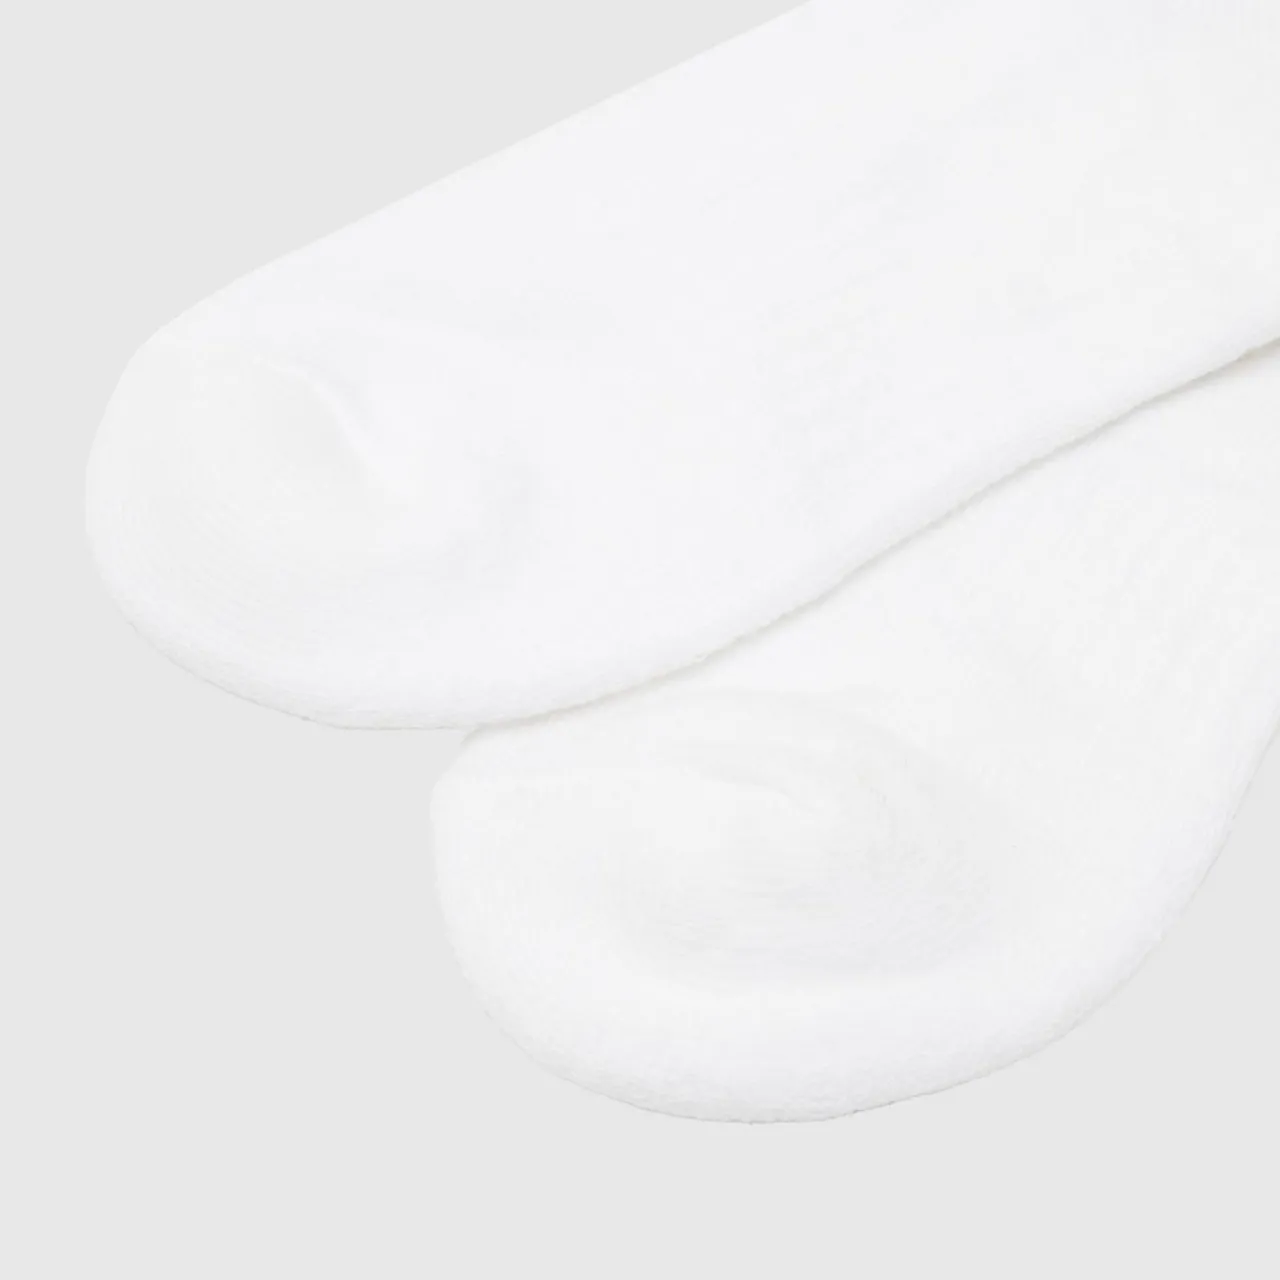 Nike White & Black Everyday Ankle Socks 6 Pack